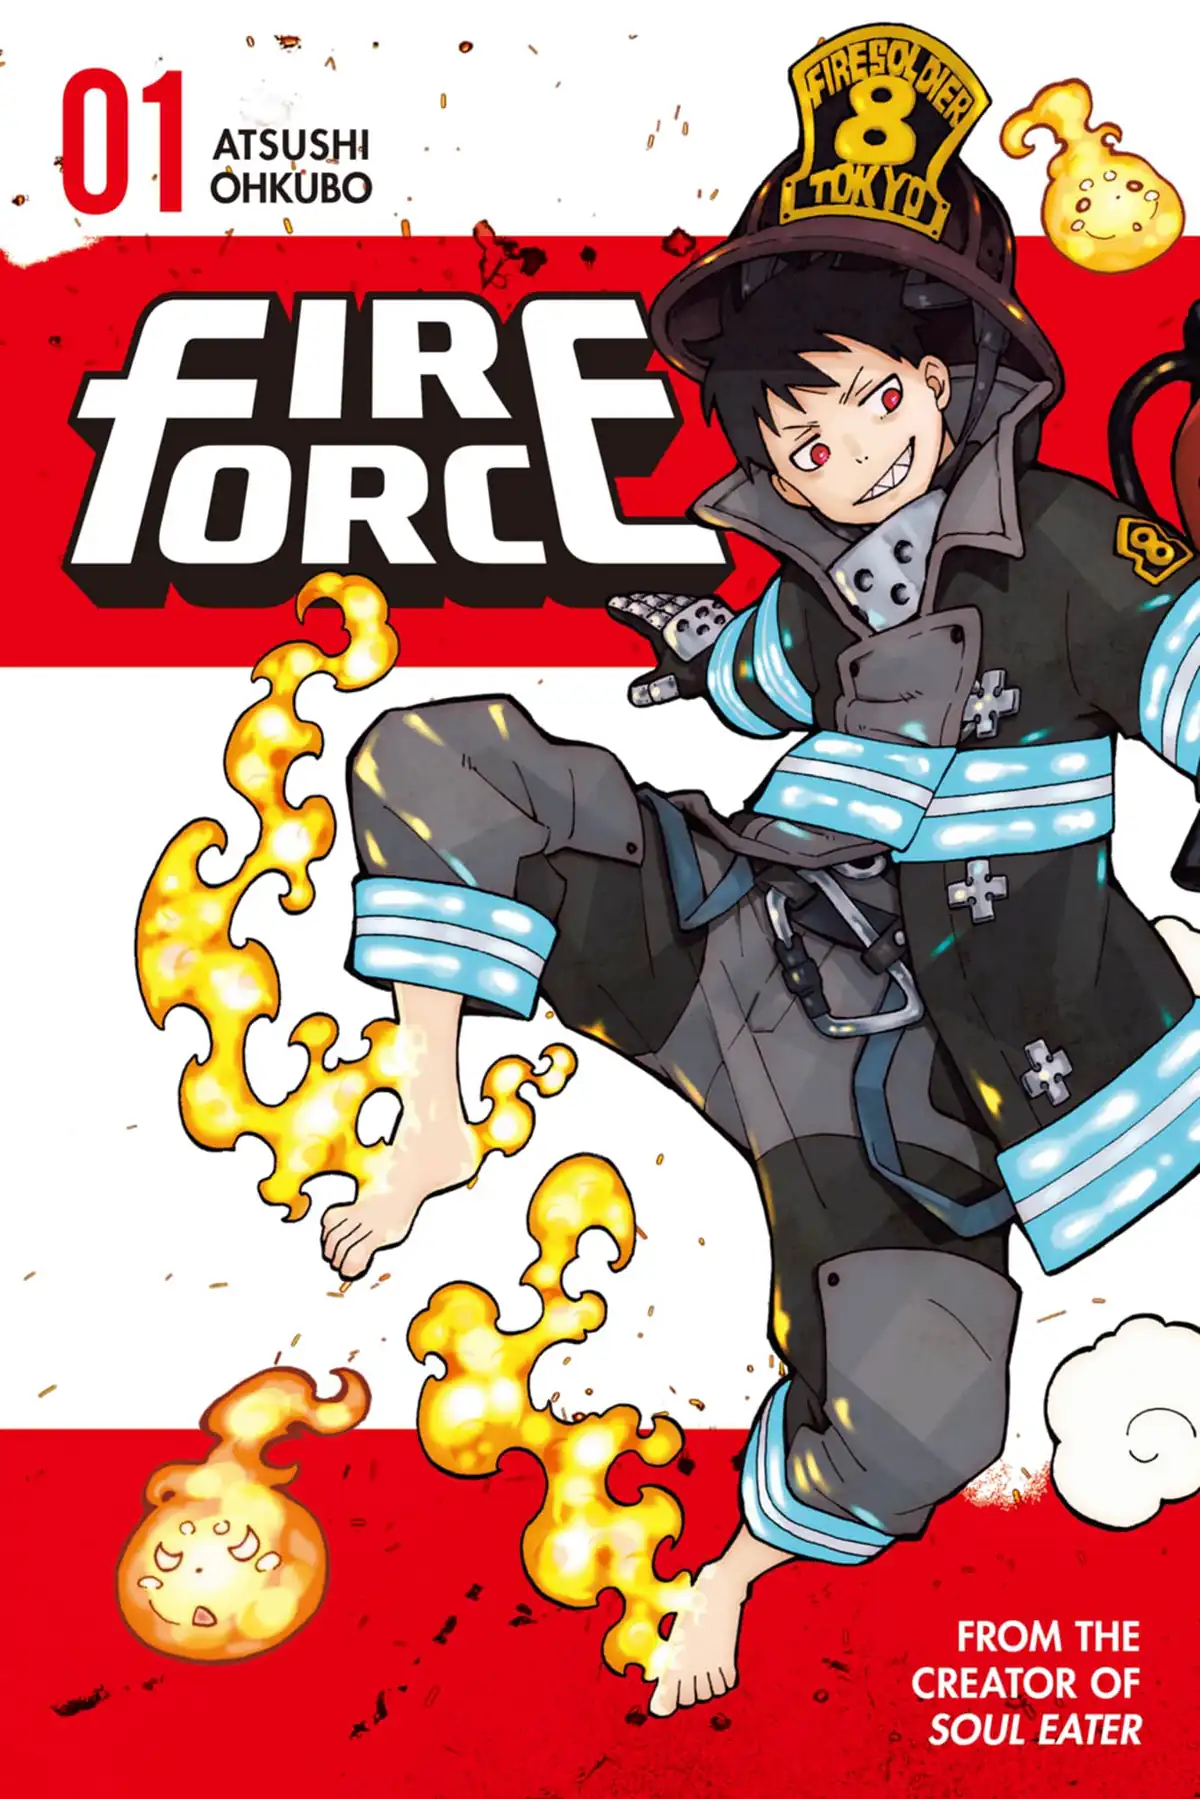 Fire force manga read